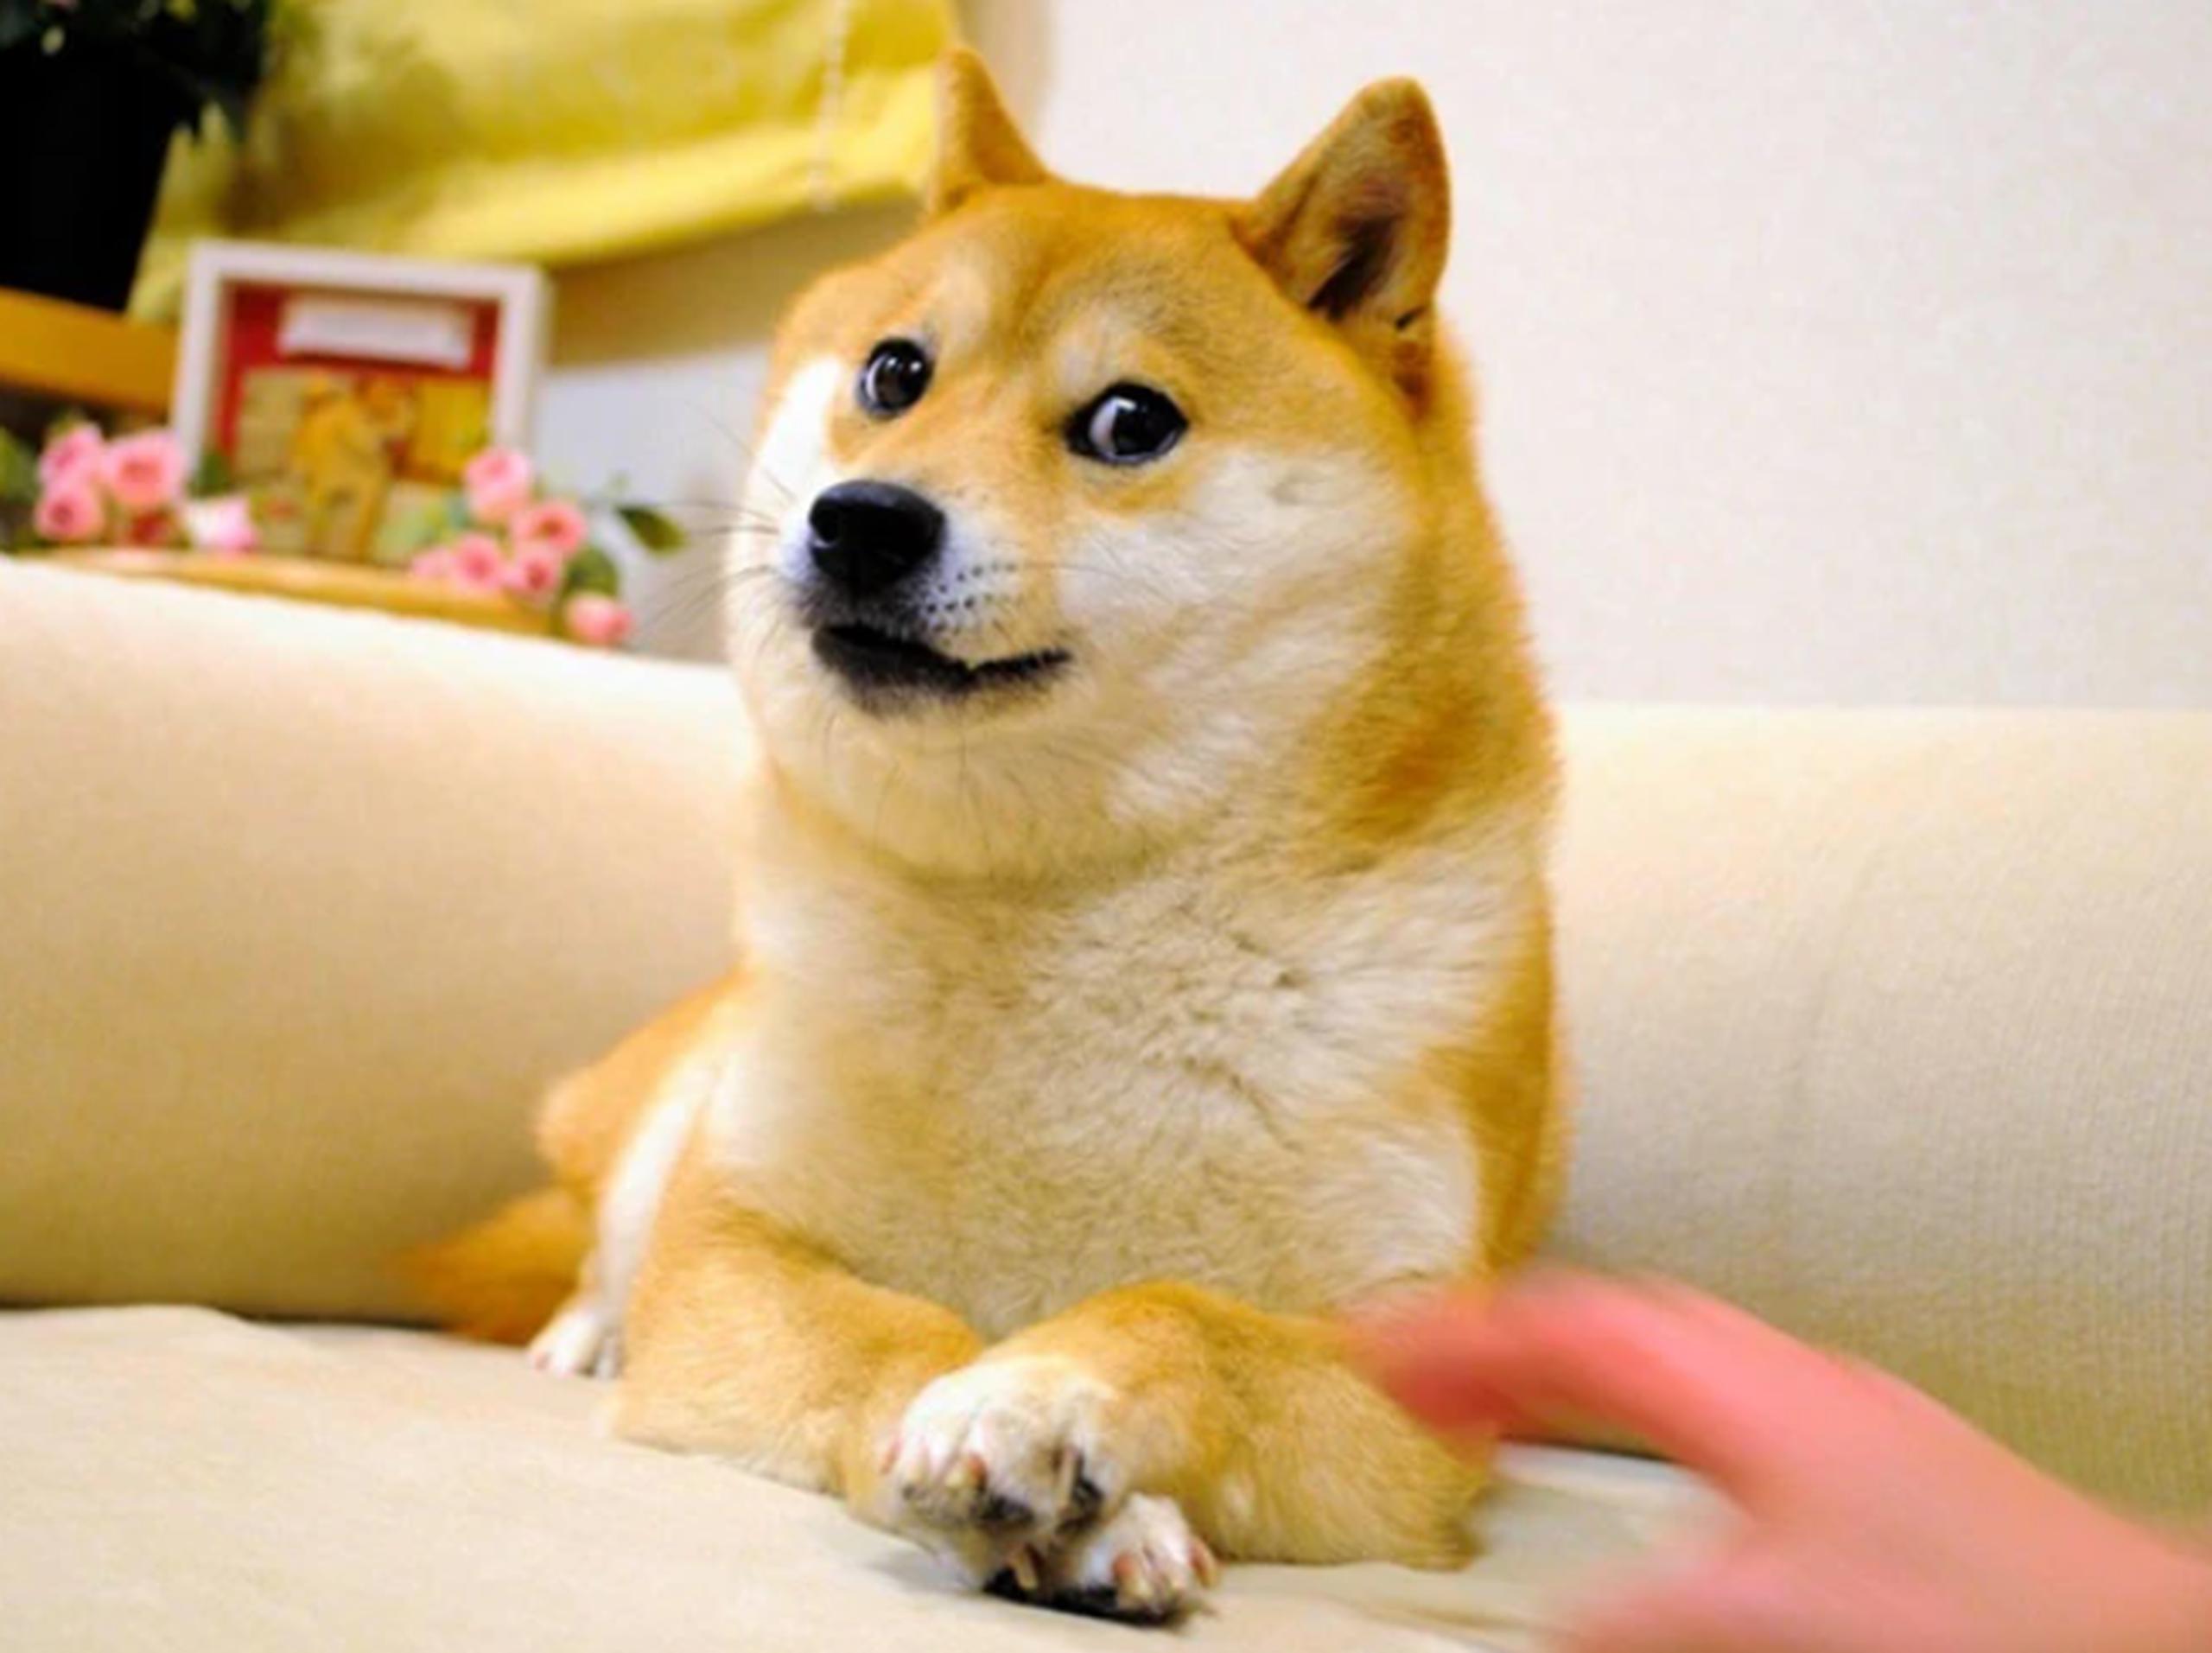 La perrita de raza shiba inu se volvió viral en internet durante la década del 2010 luego que su dueña publicara unas imágenes tras adoptarla.